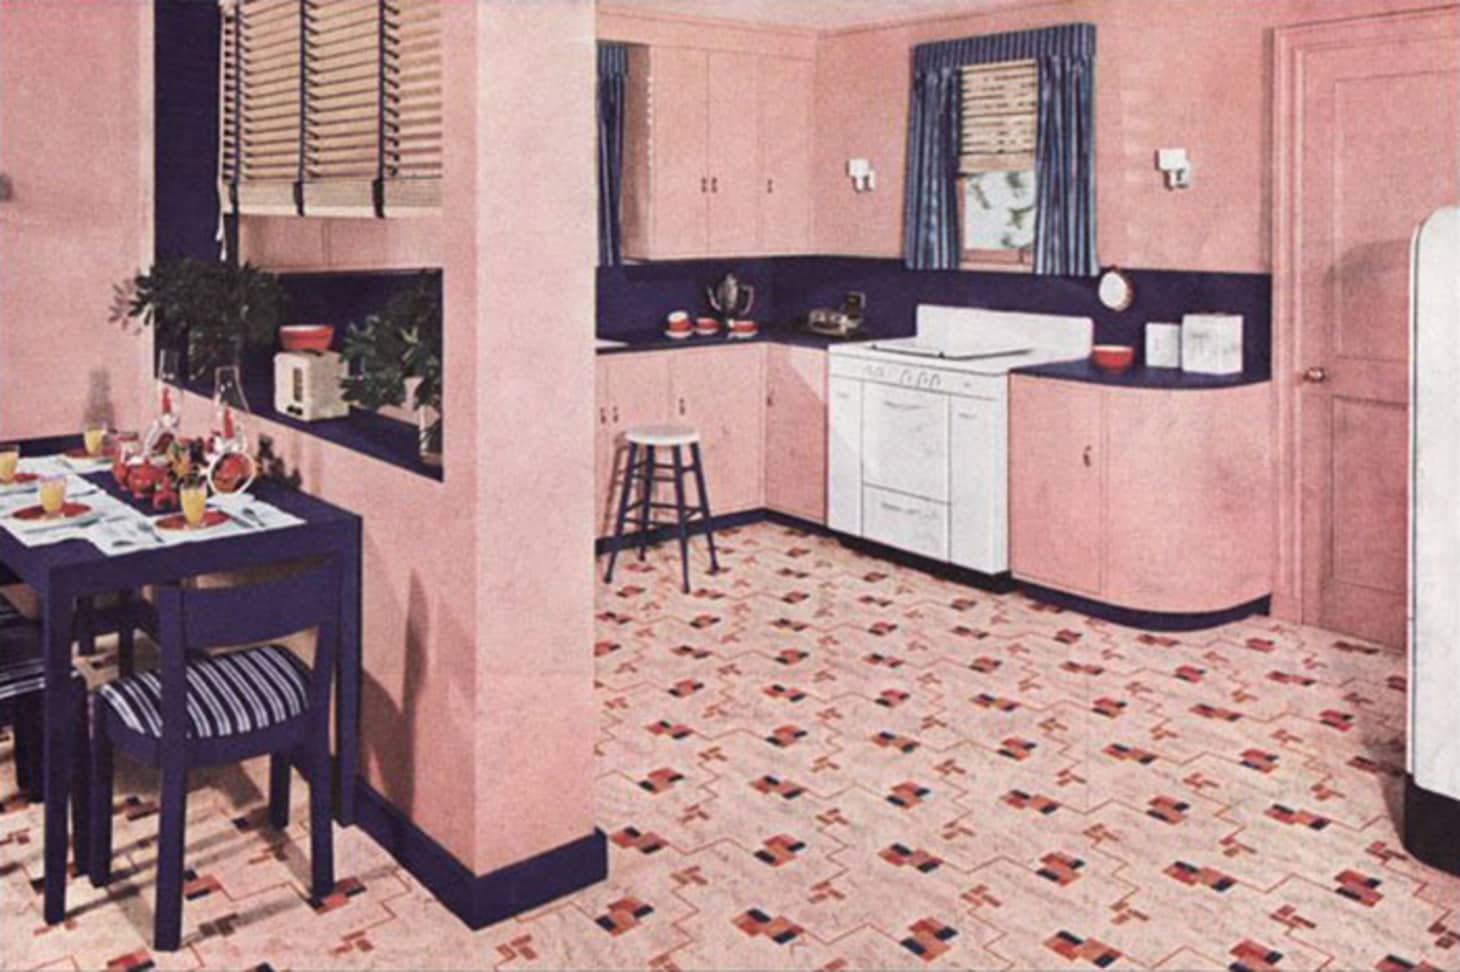 1930 farm kitchen design